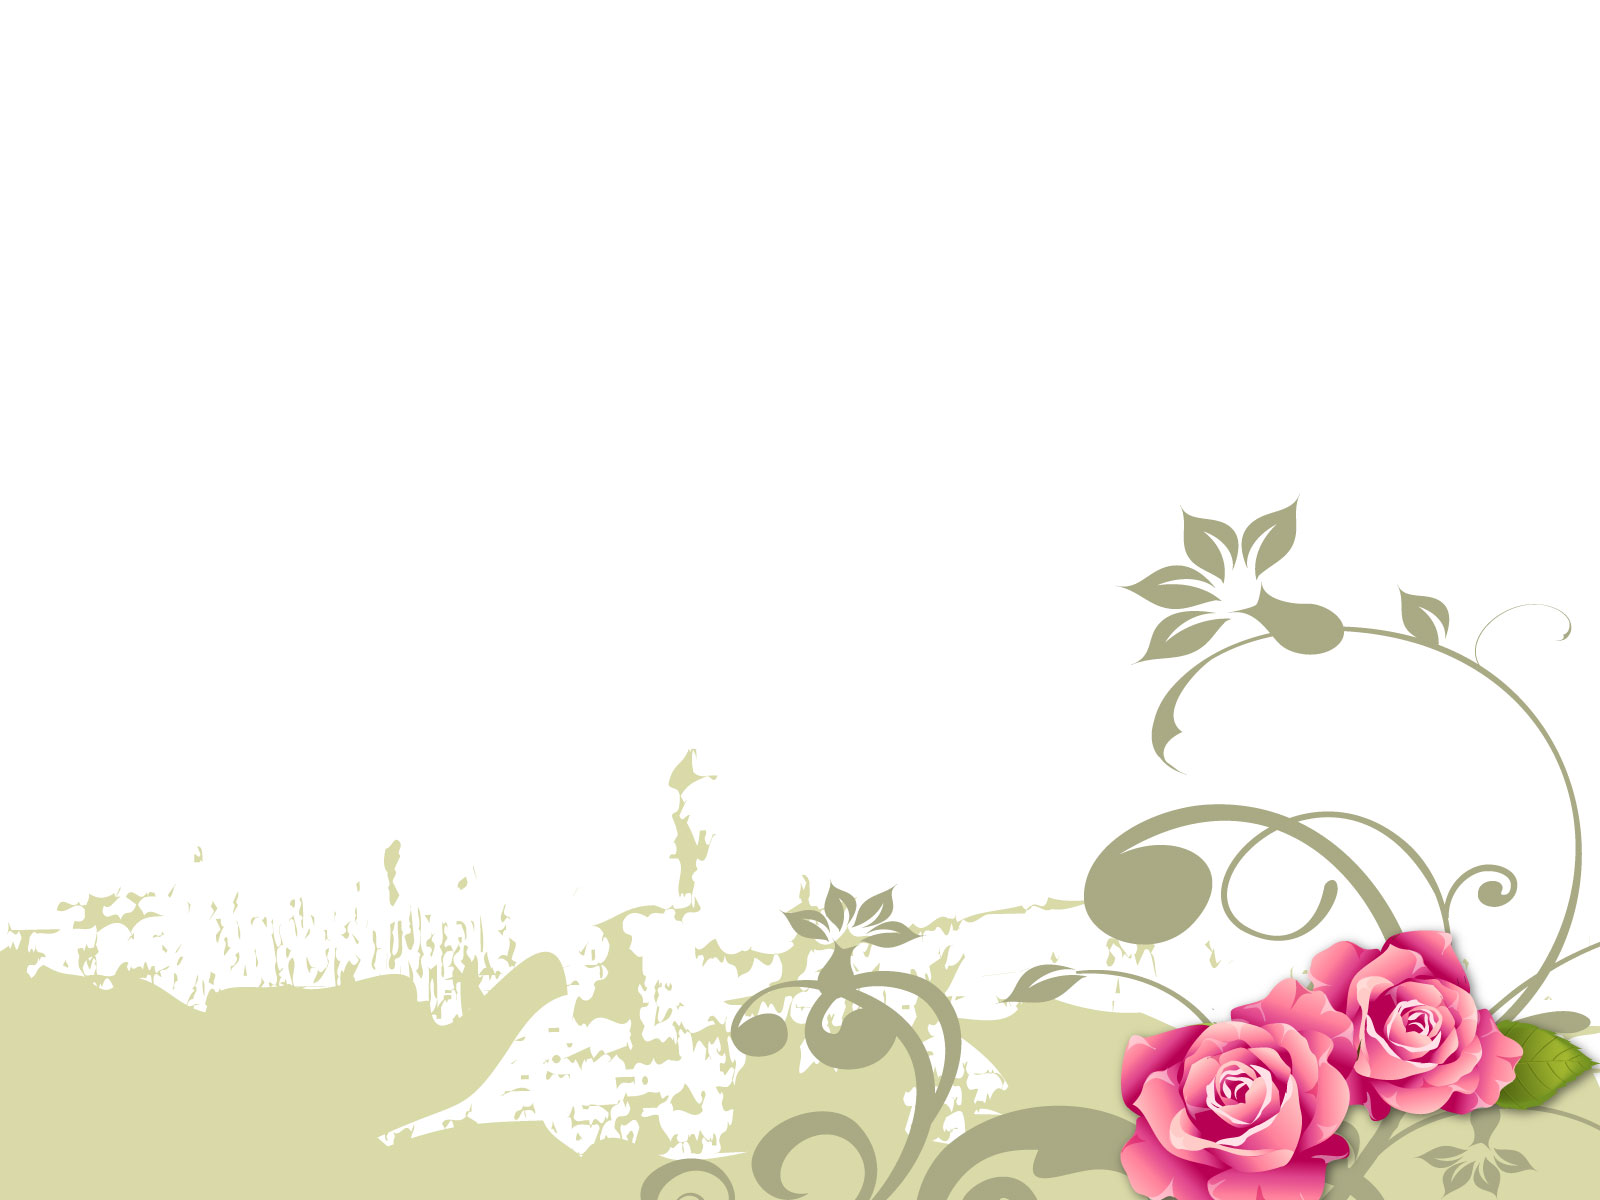 Flower Background Designs Jpg